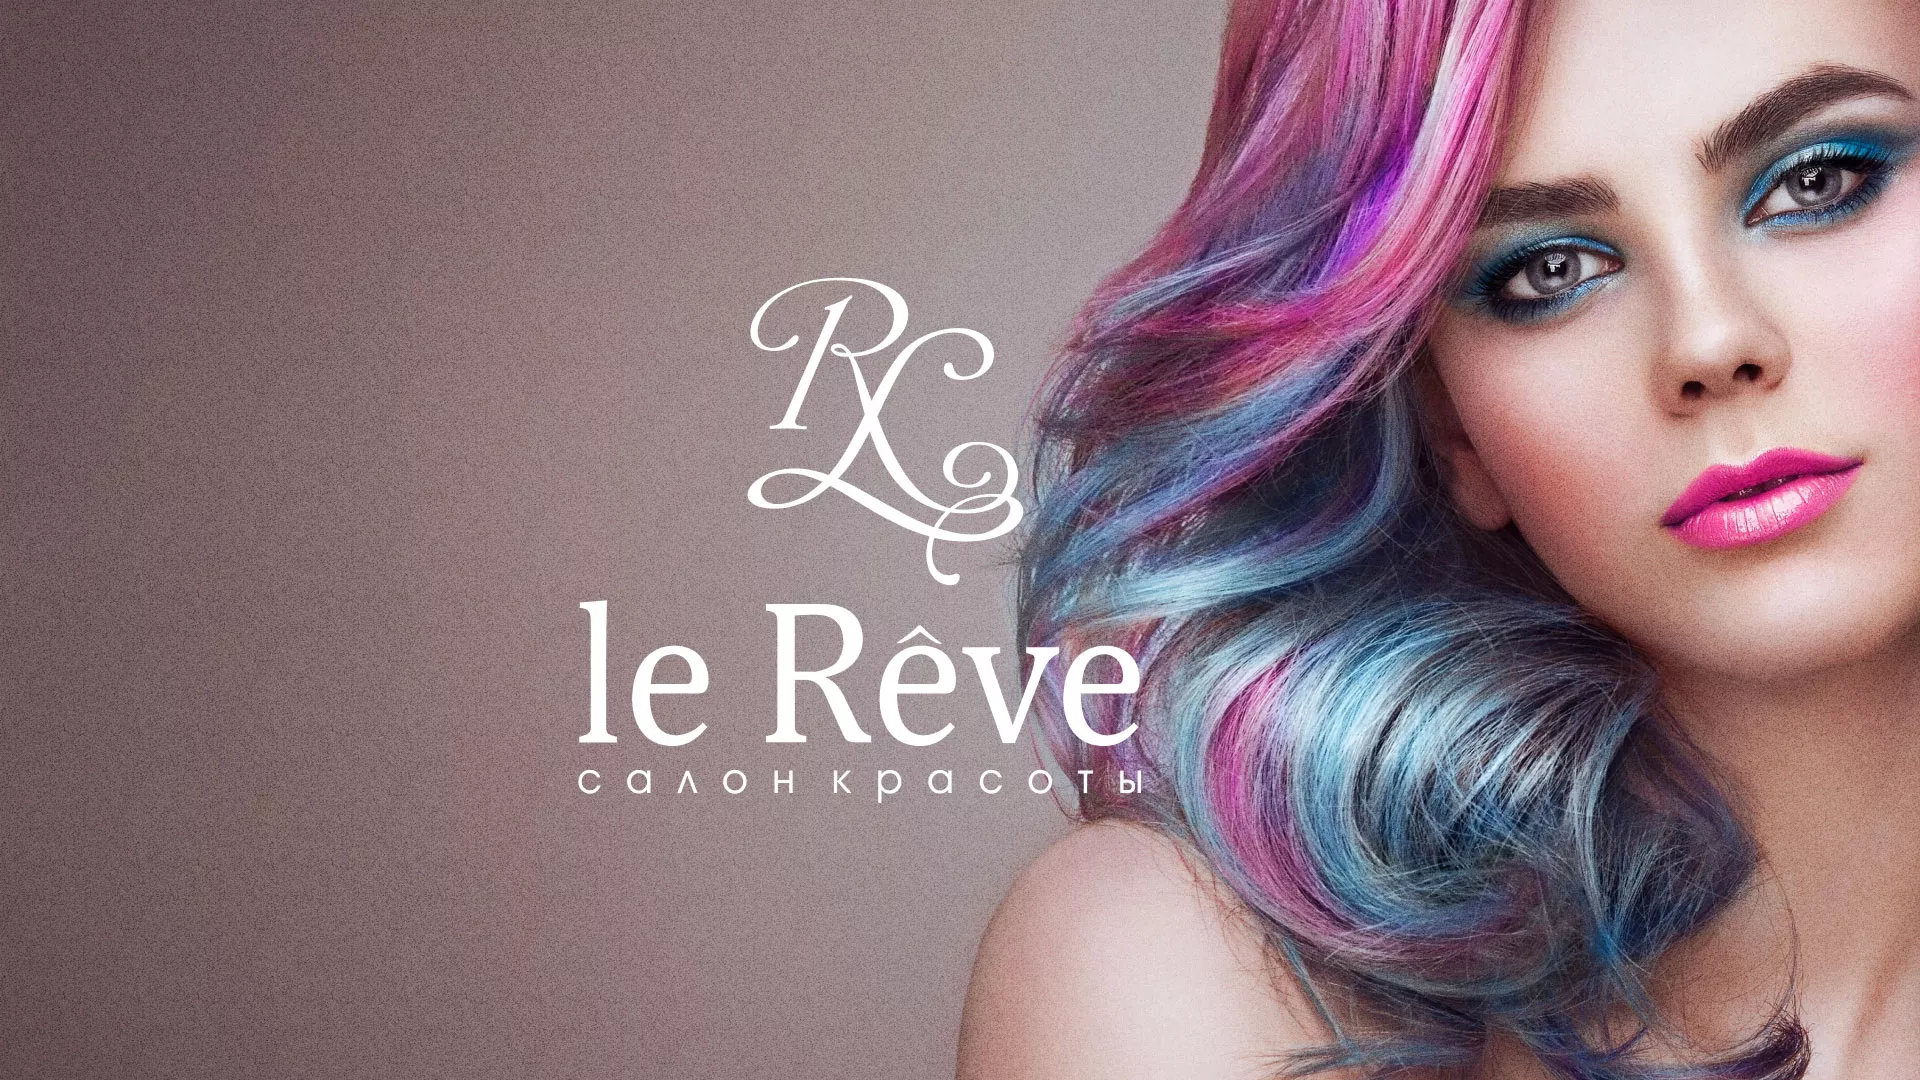 Создание сайта для салона красоты «Le Reve» в Ростове-на-Дону